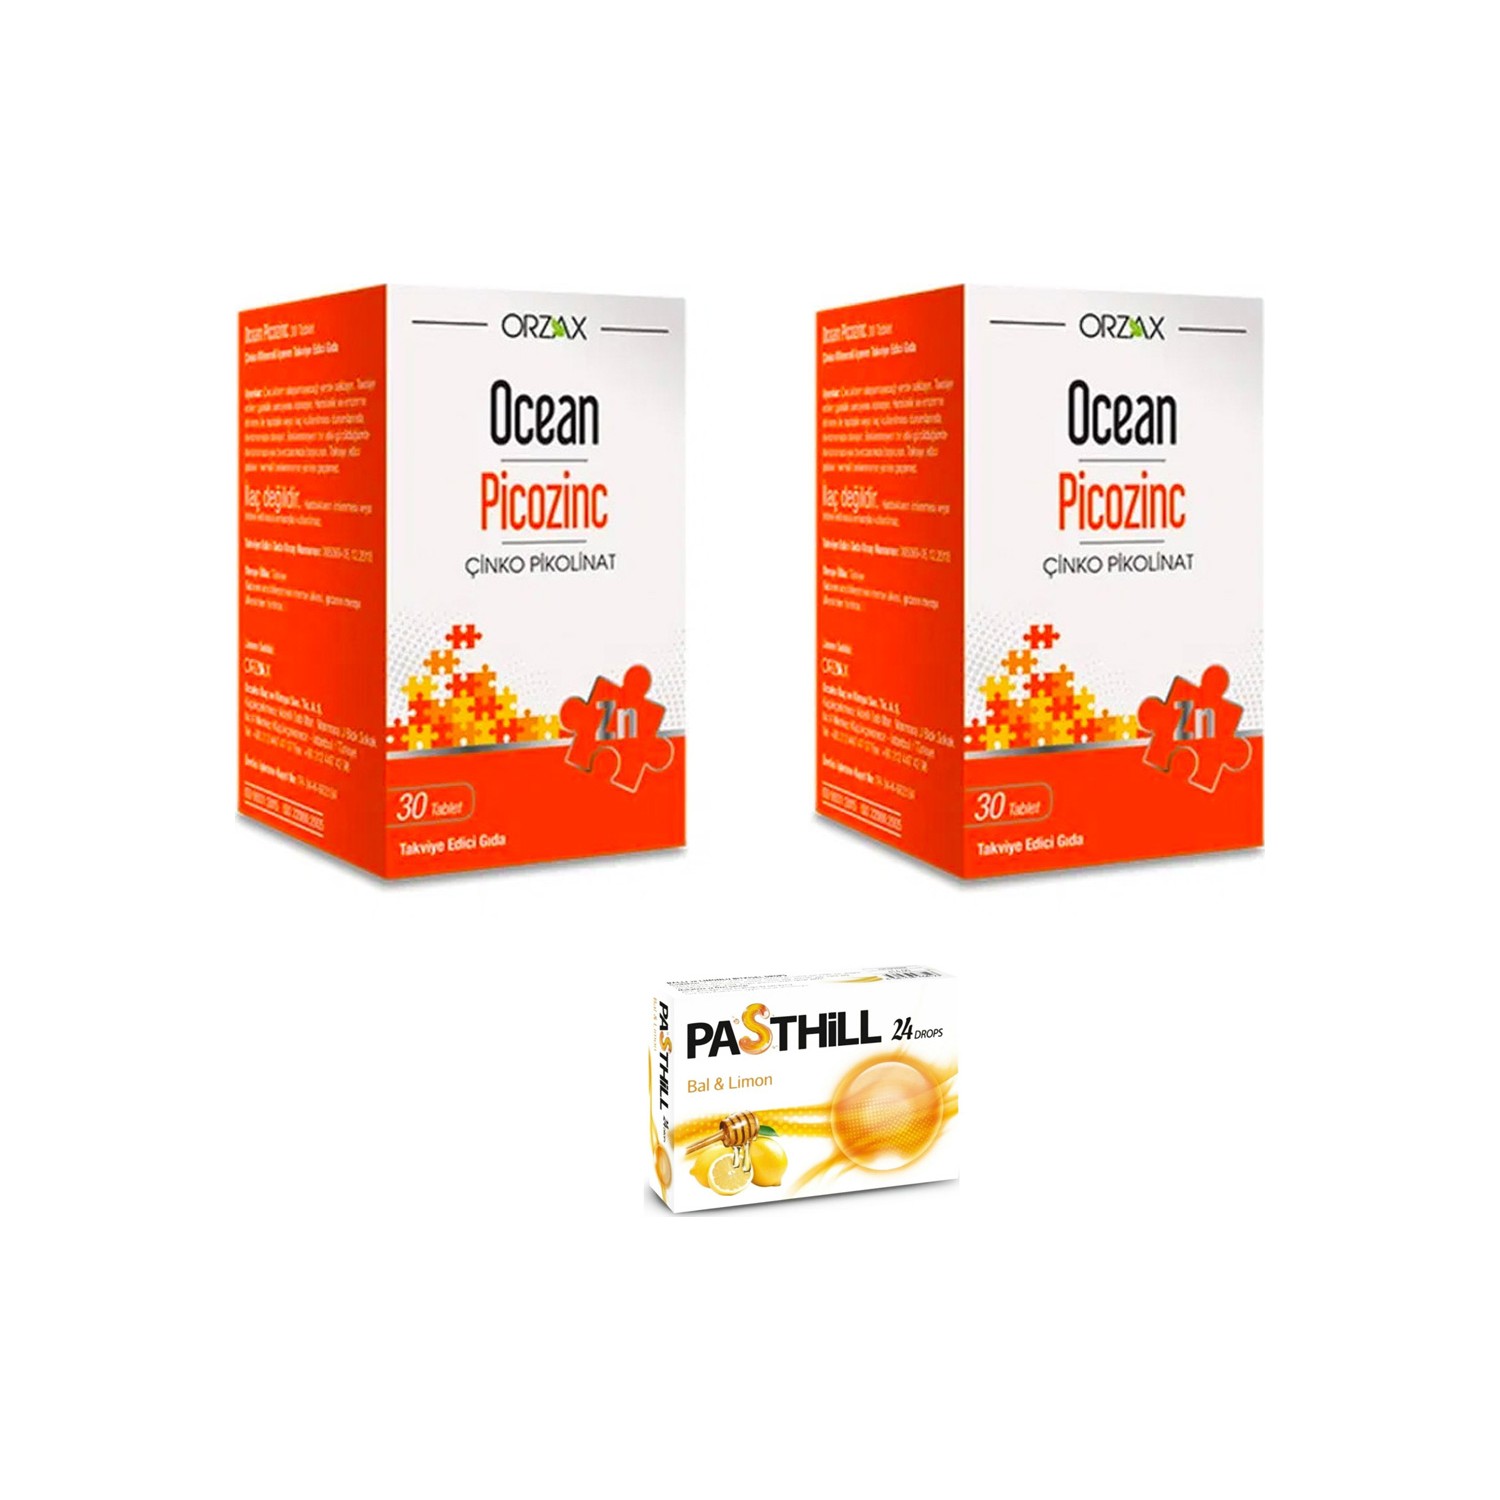 цена Пищевая добавка Orzax Ocean Picozinc Cinko Picolinate, 2 упаковки по 30 таблеток + Пастилки Pasthill со вкусом меда и лимона